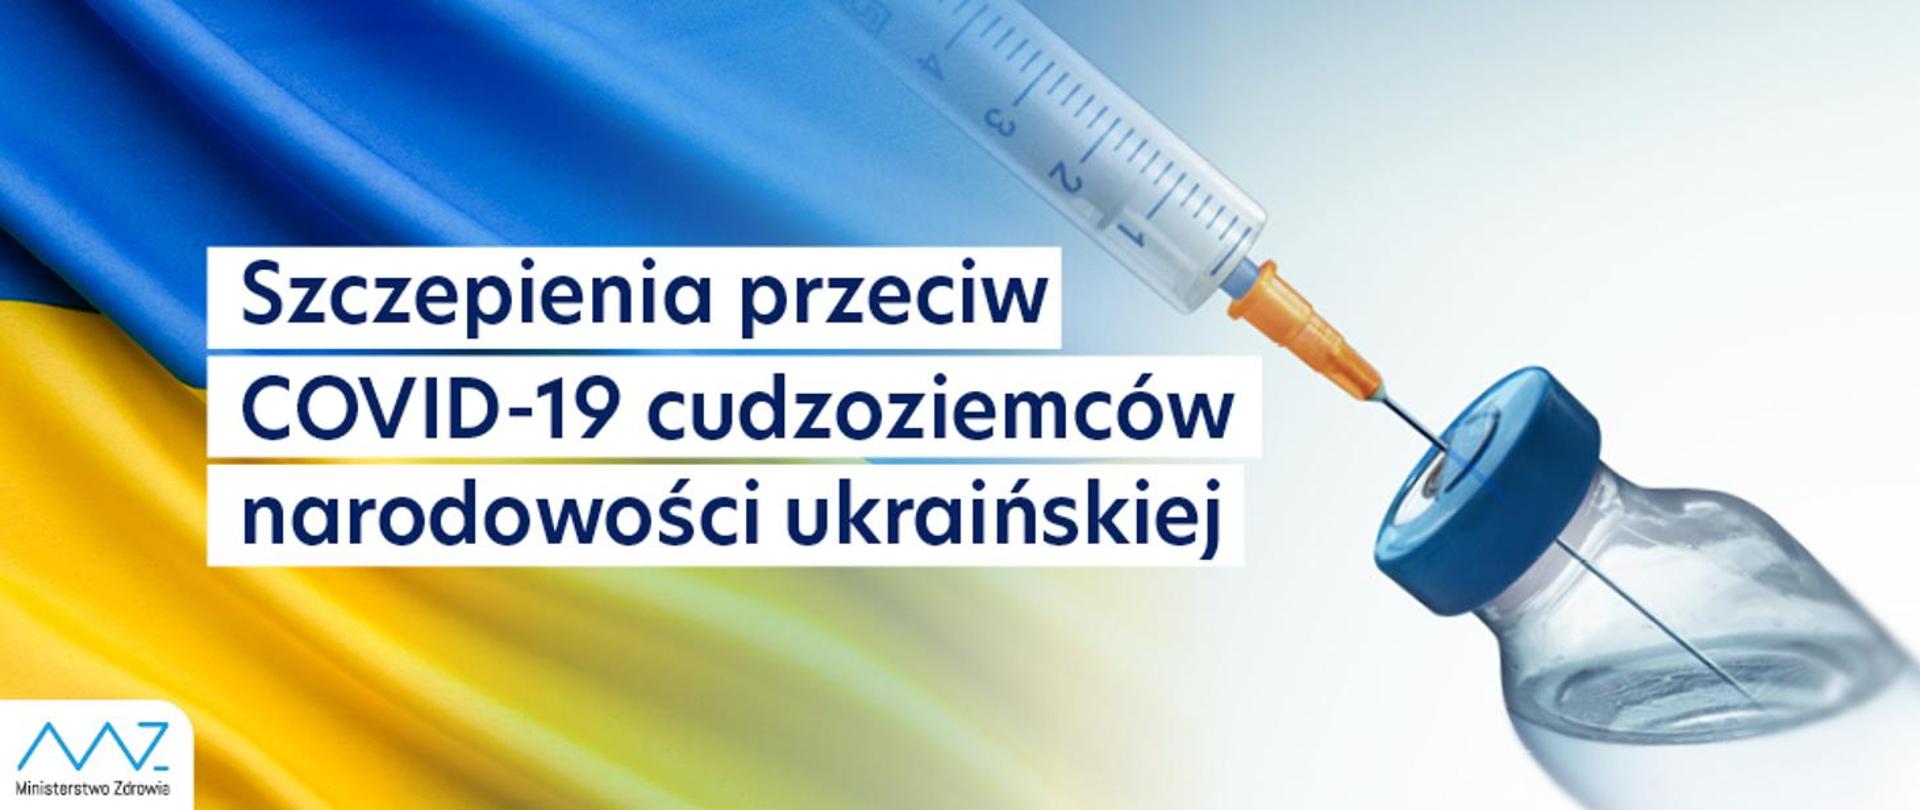 Szczepienia przeciw COVID-19 dla osób z Ukrainy